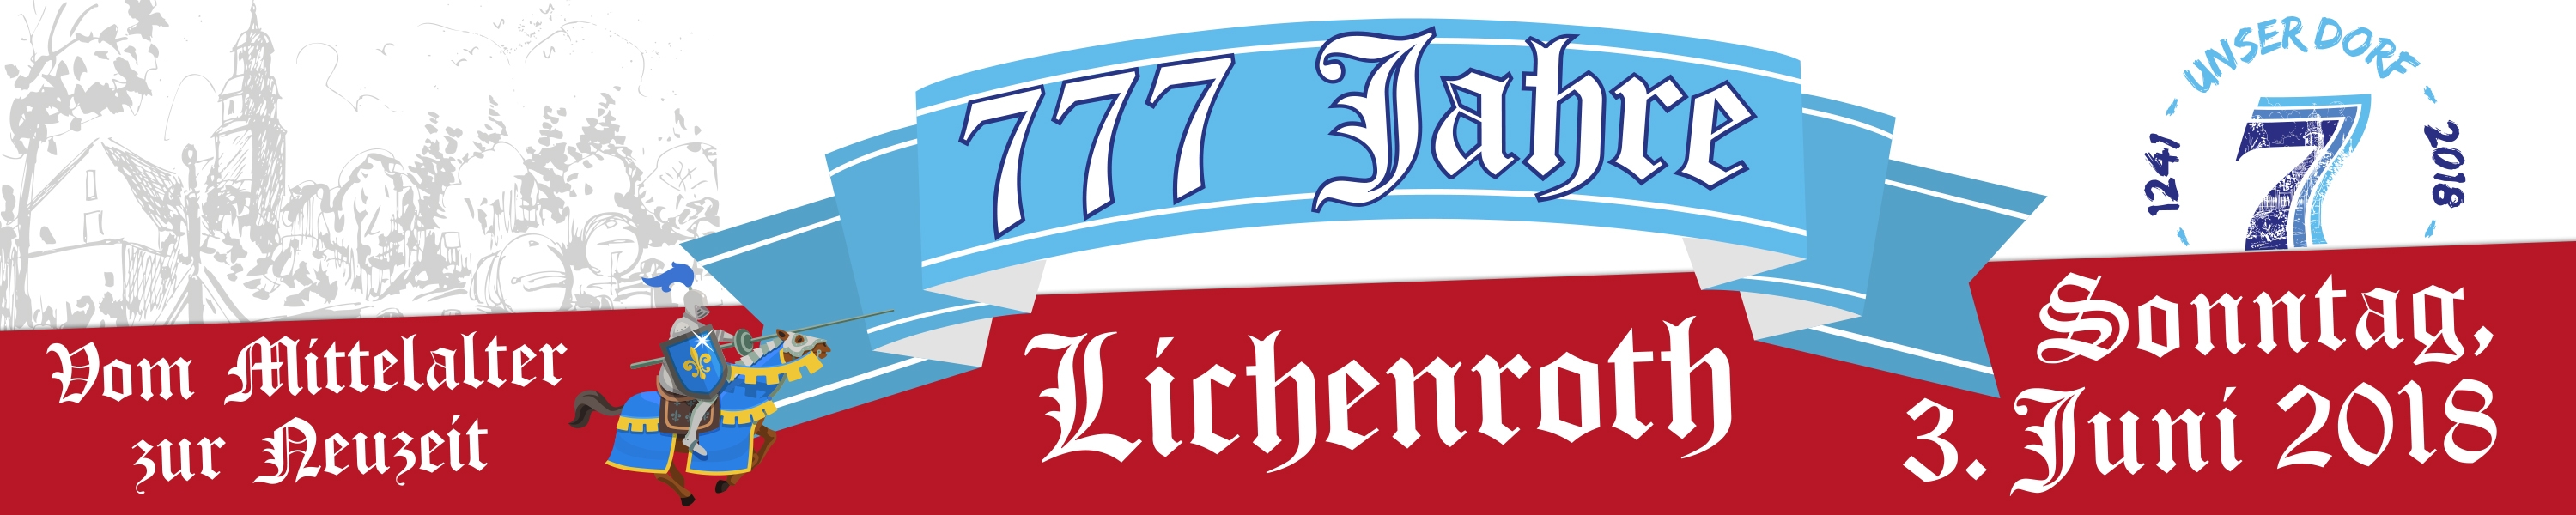 Dorfjubilum 777 Jahre Lichenroth